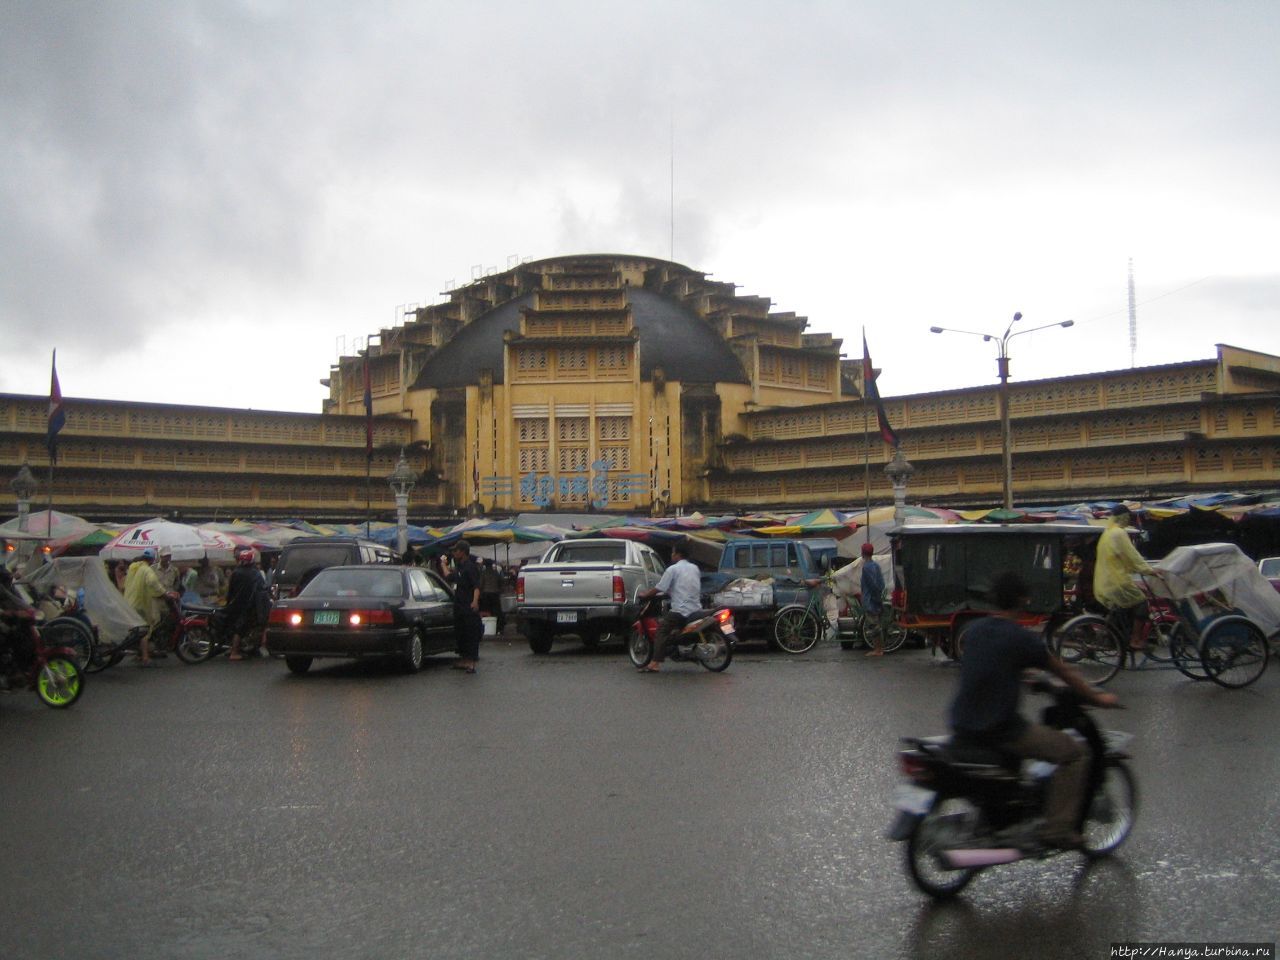 Рынок в Пномпене Пномпень, Камбоджа